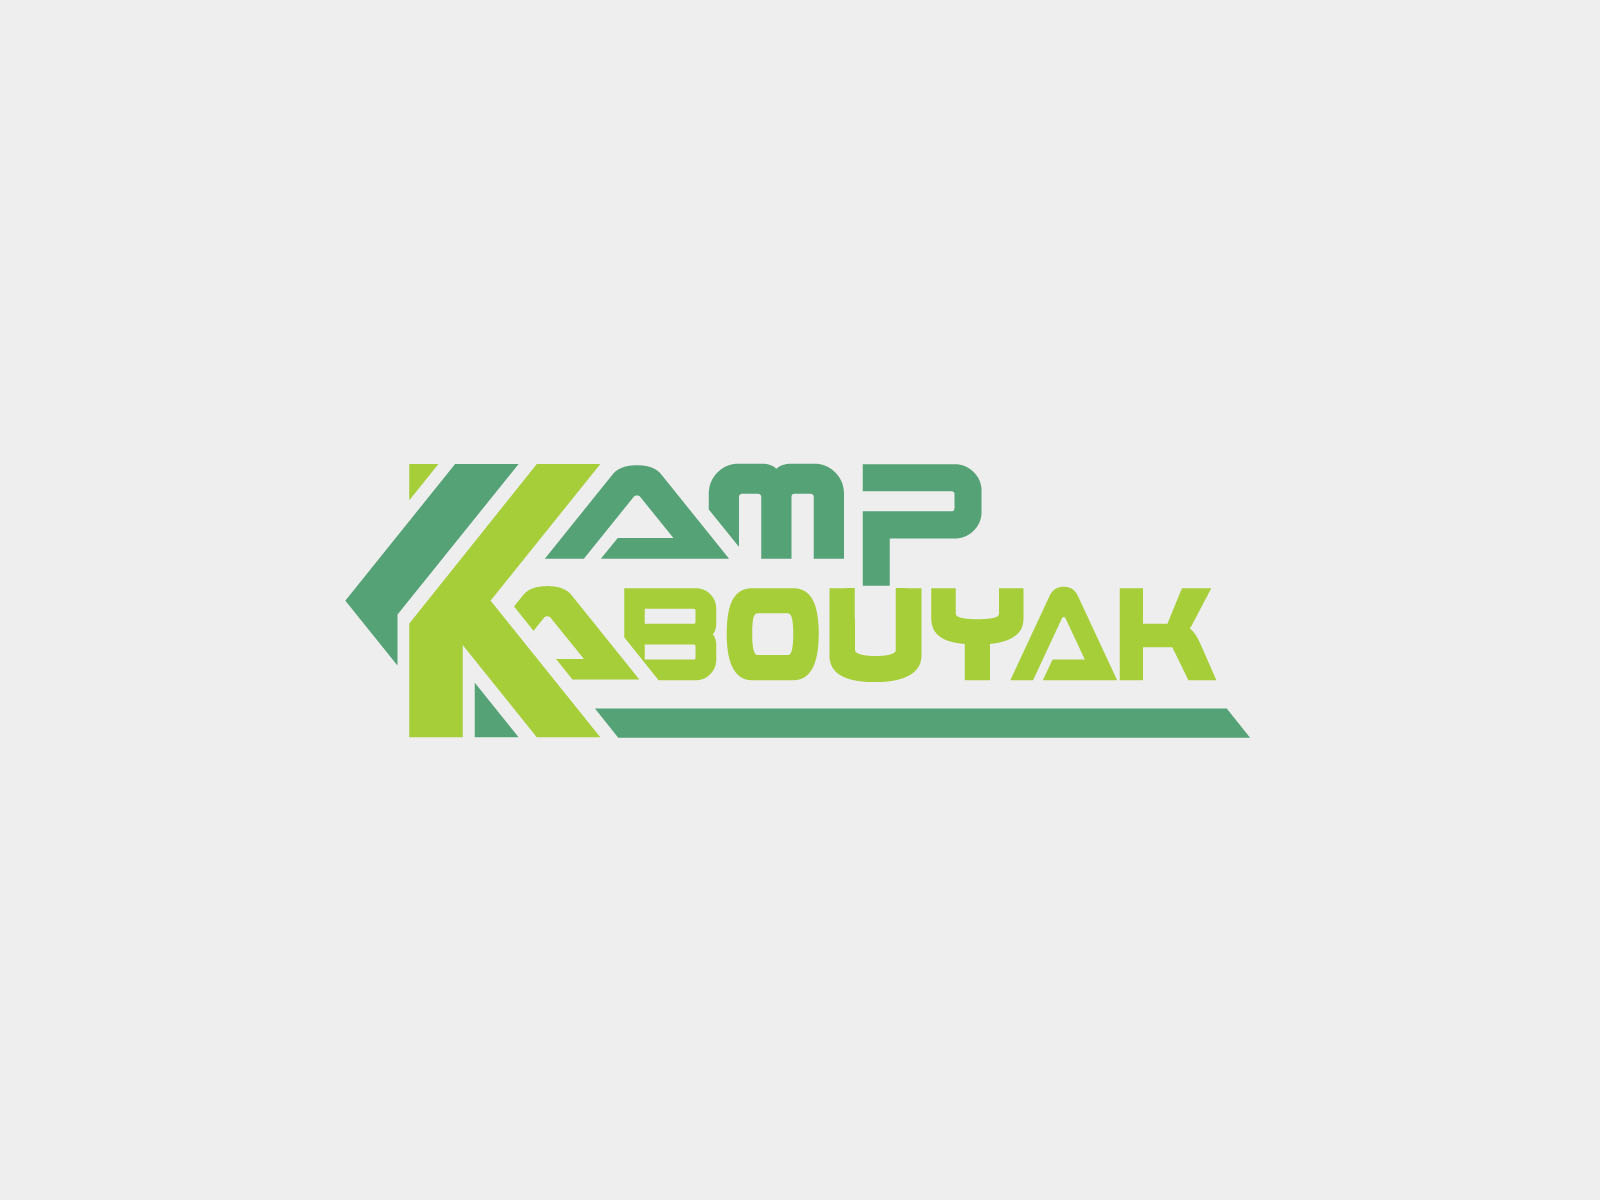 Camp Kabouyak